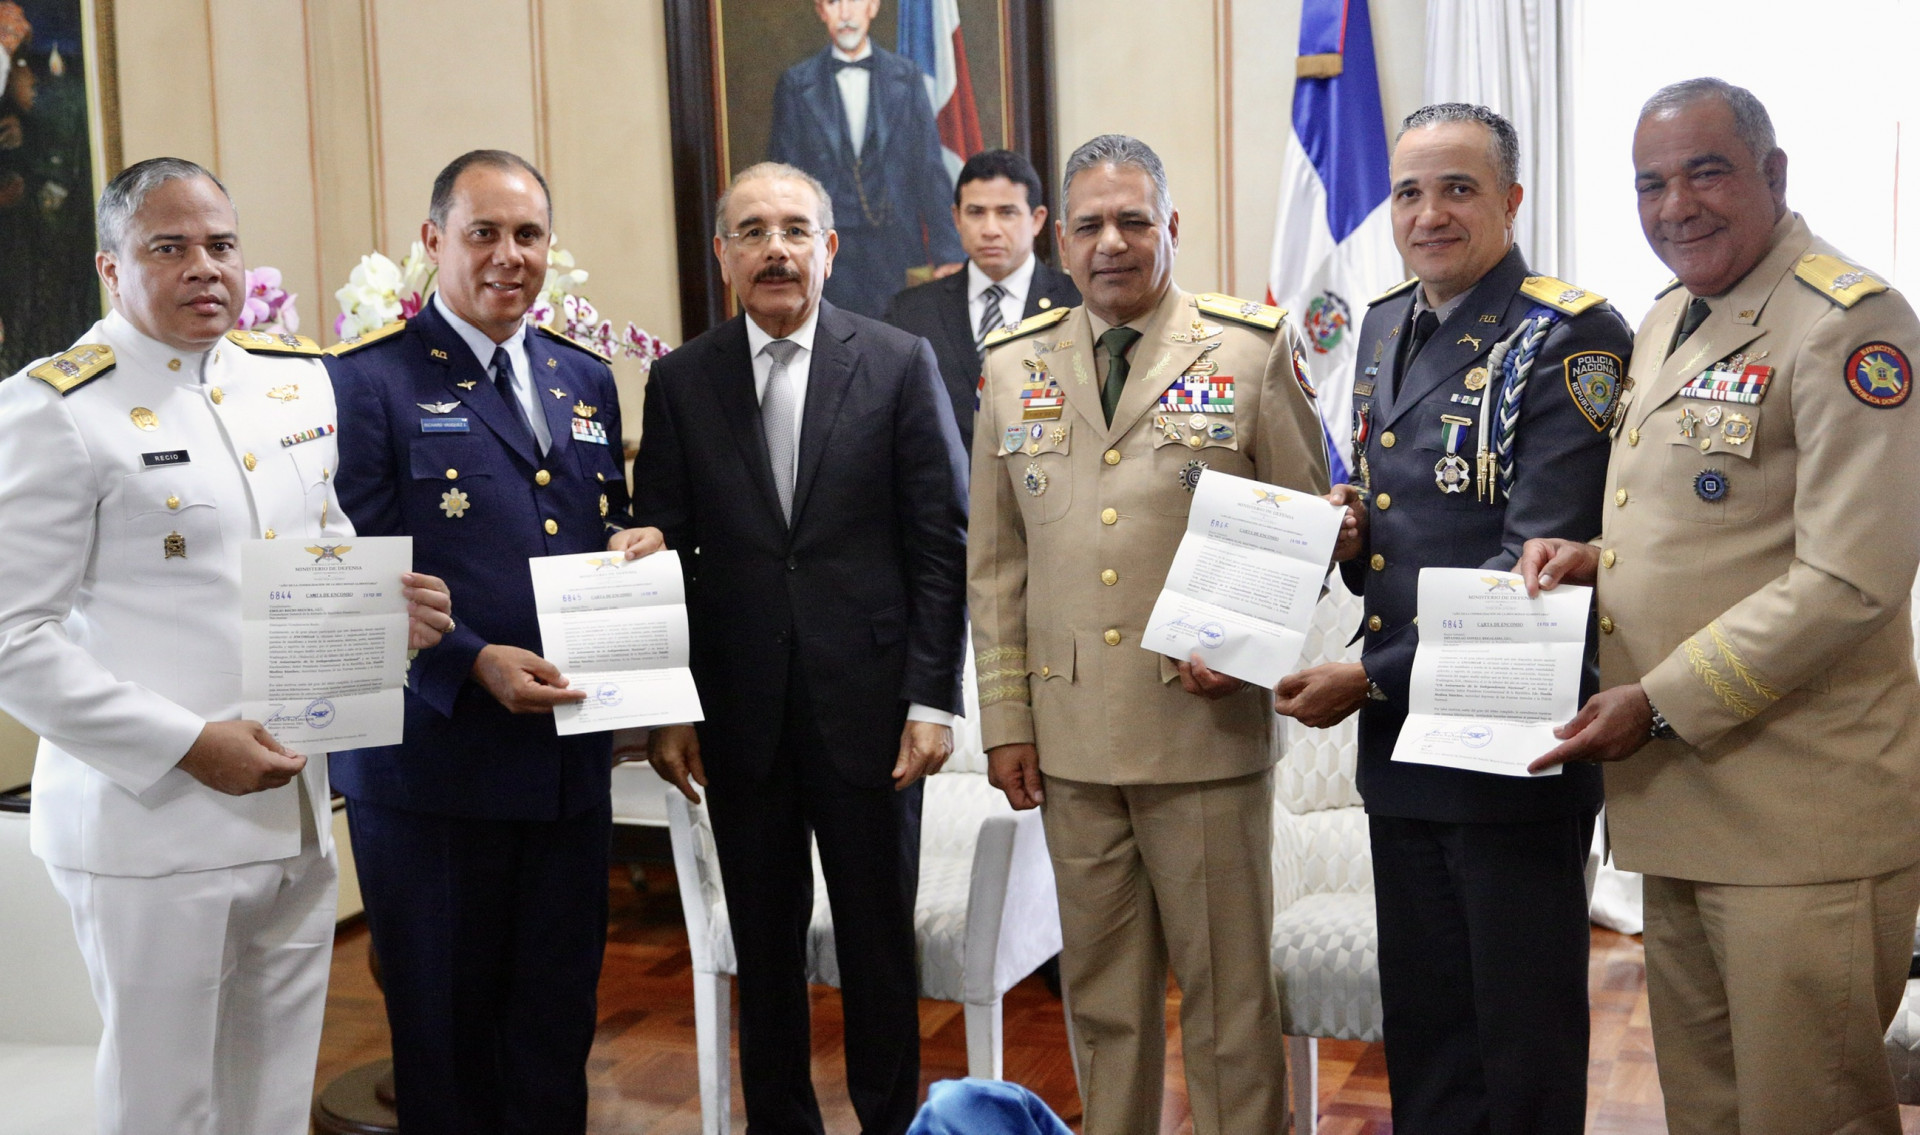 REPÚBLICA DOMINICANA: Altos mandos entregan al presidente Danilo Medina cartas de encomio en reconocimiento a las instituciones por buen desempeño desfile militar